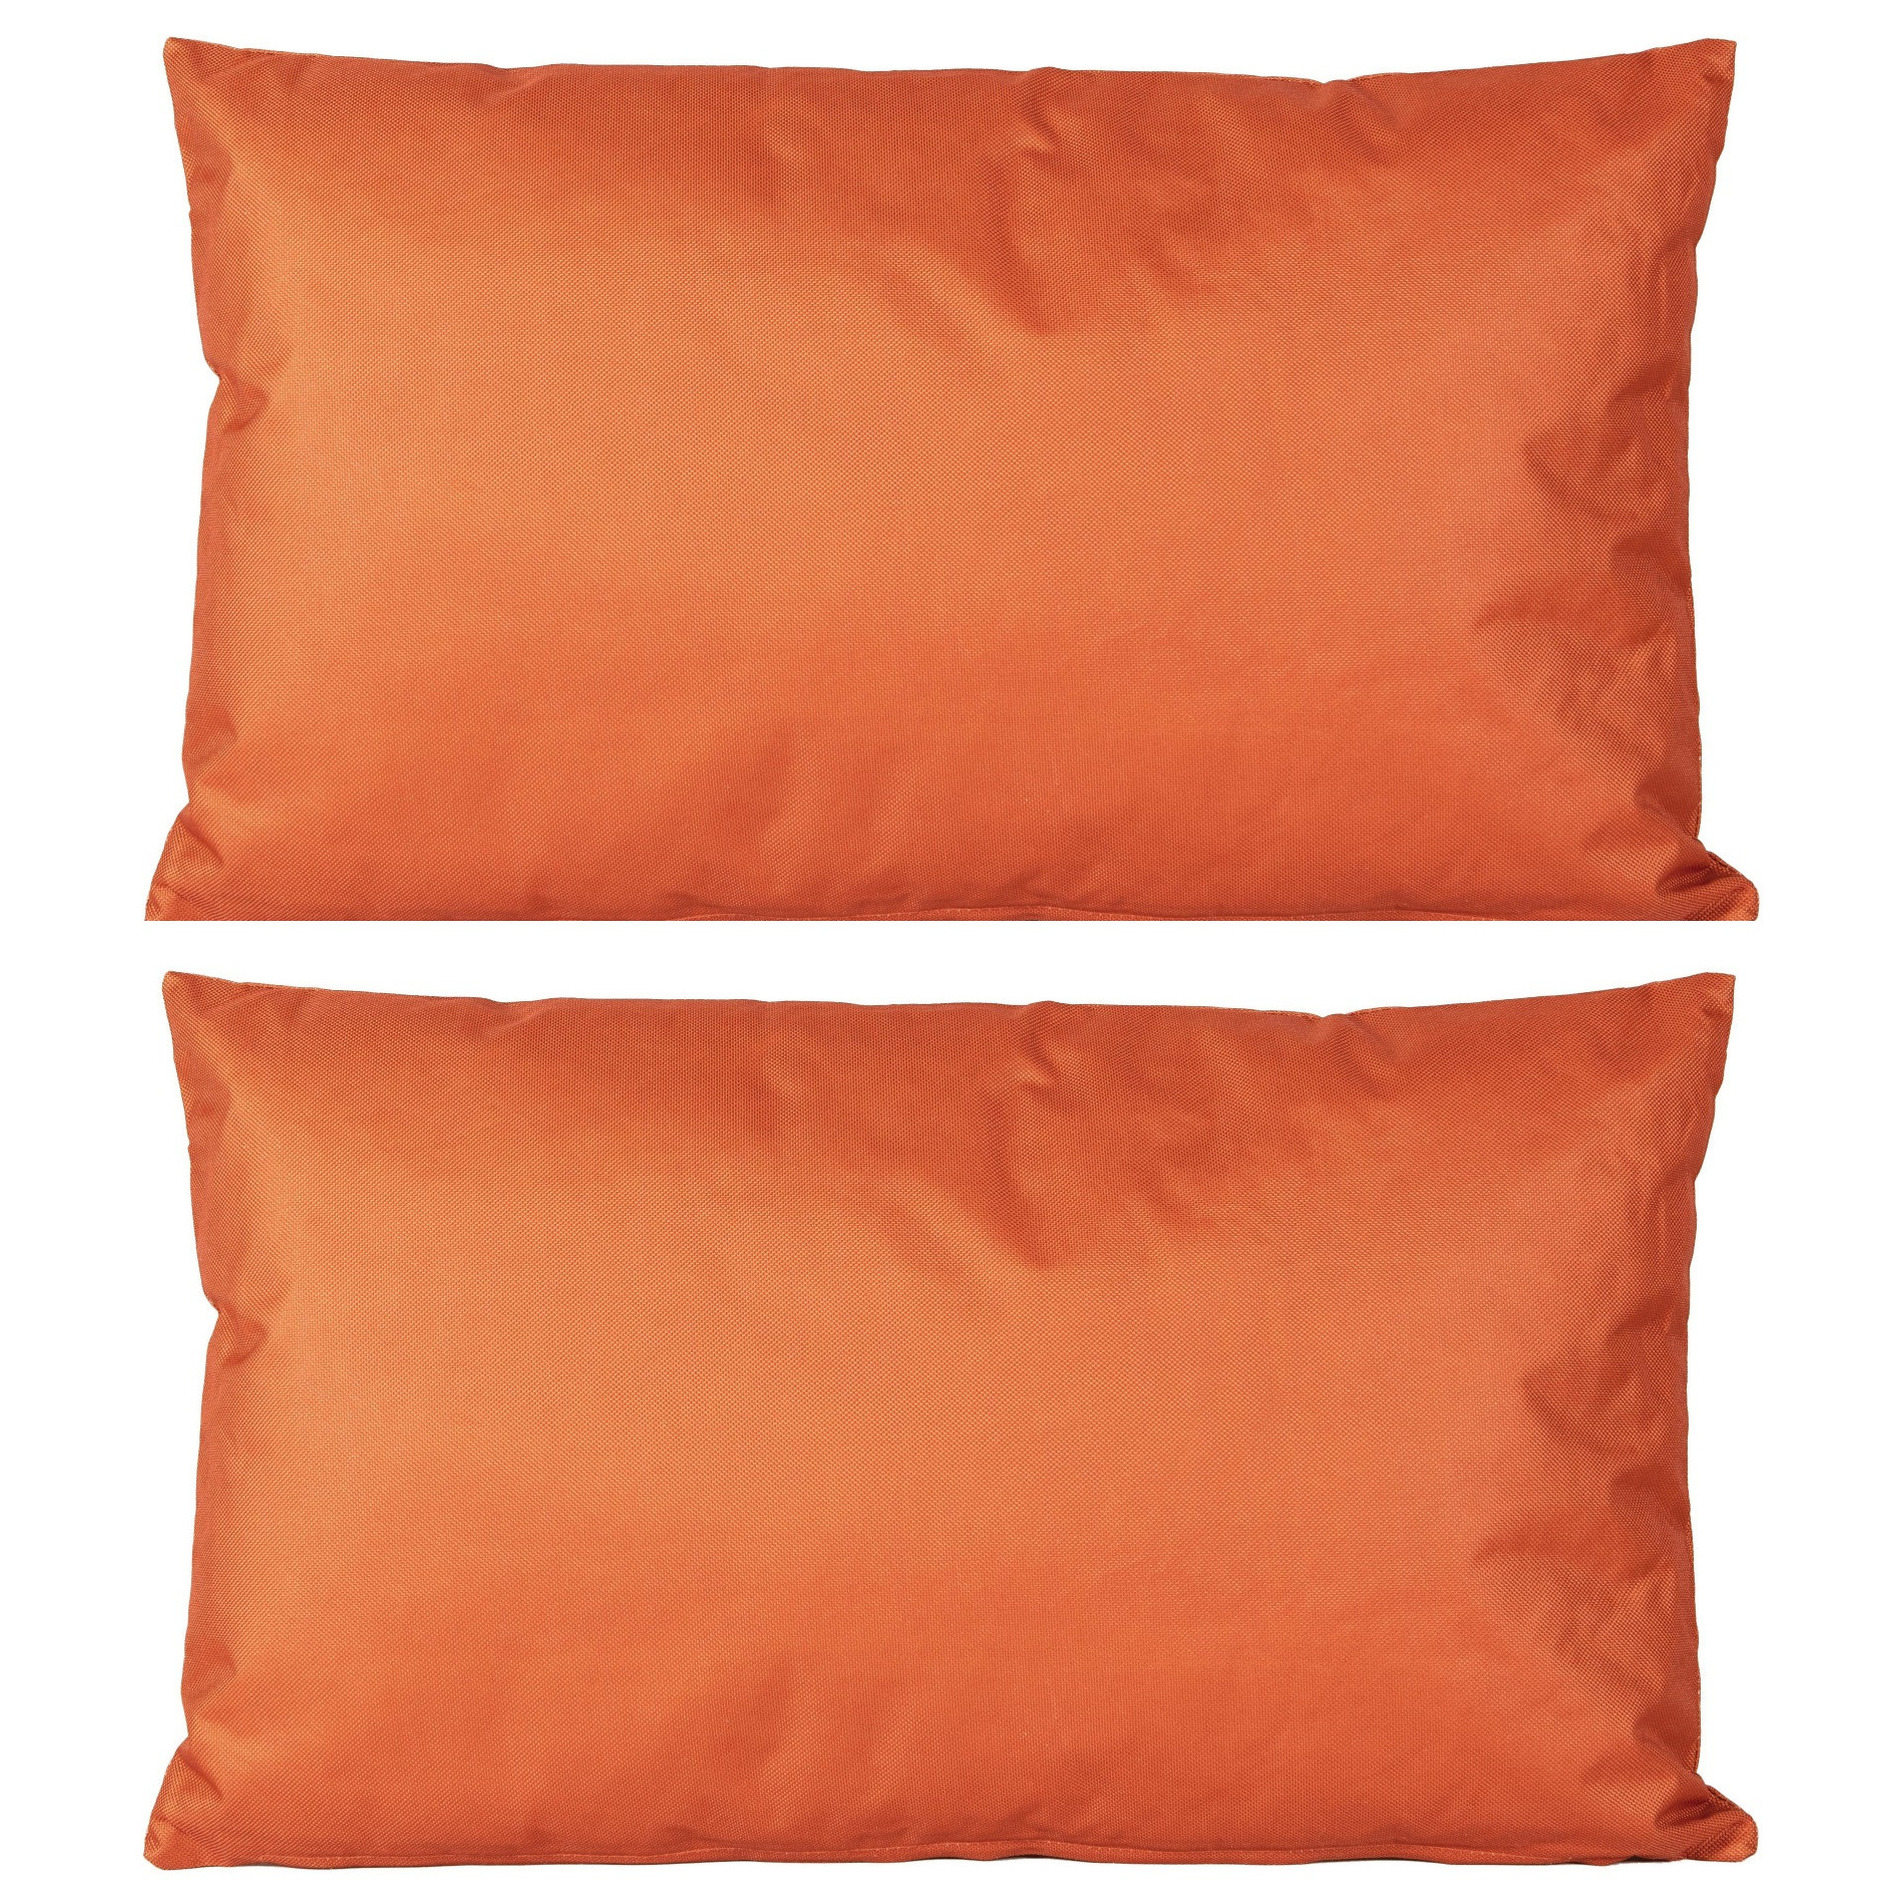 8x Bank-sier kussens voor binnen en buiten in de kleur oranje 30 x 50 cm